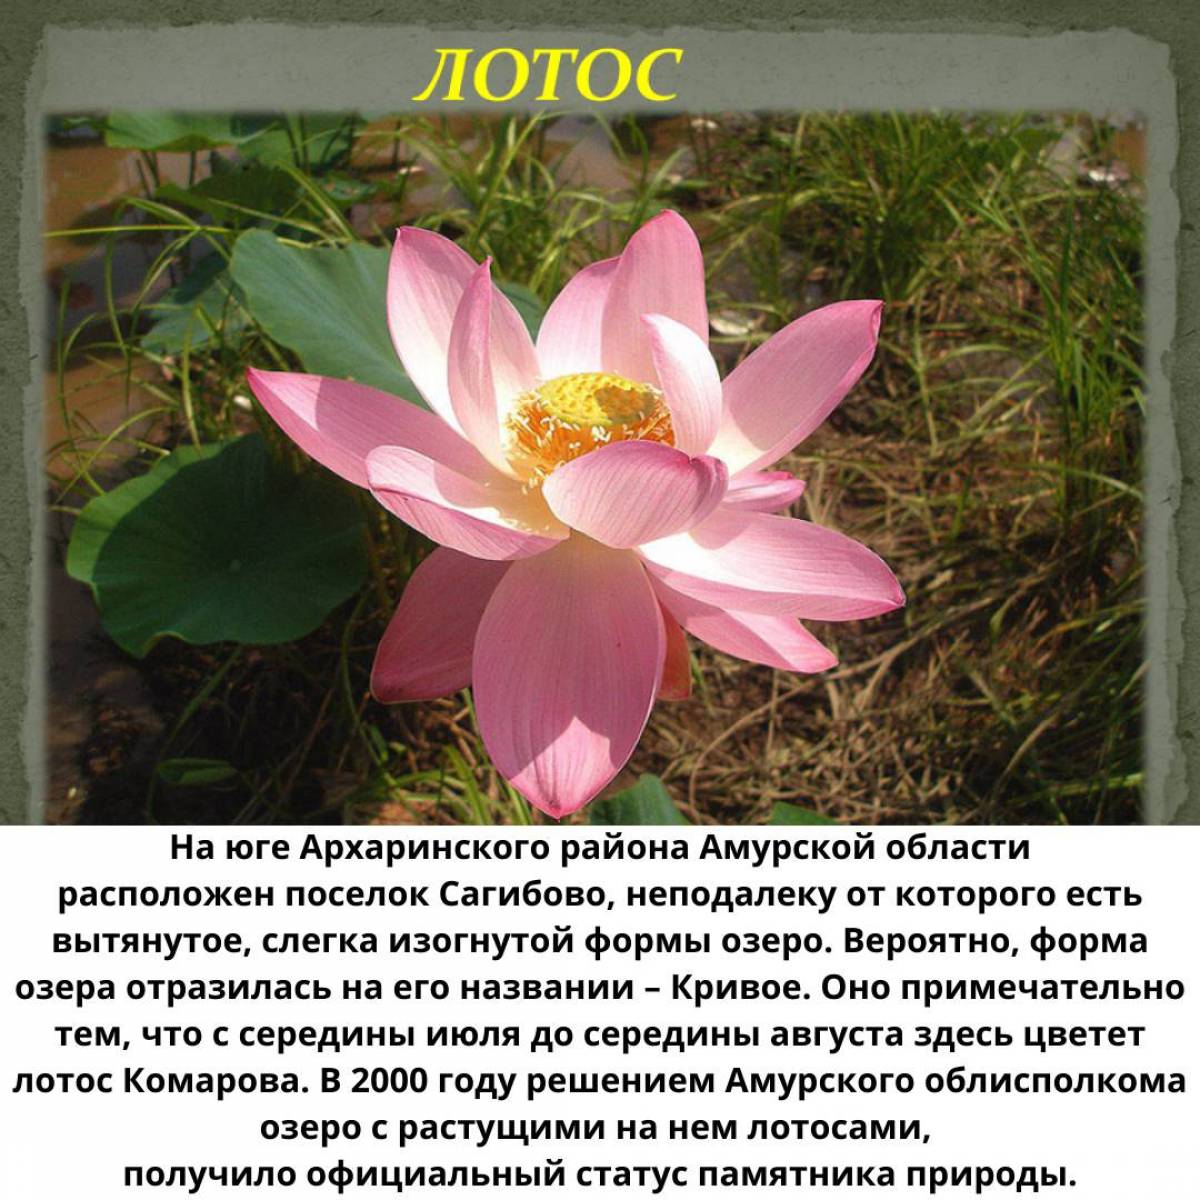 Растения Красной книги России — названия, краткое описание и фото — Природа Мира